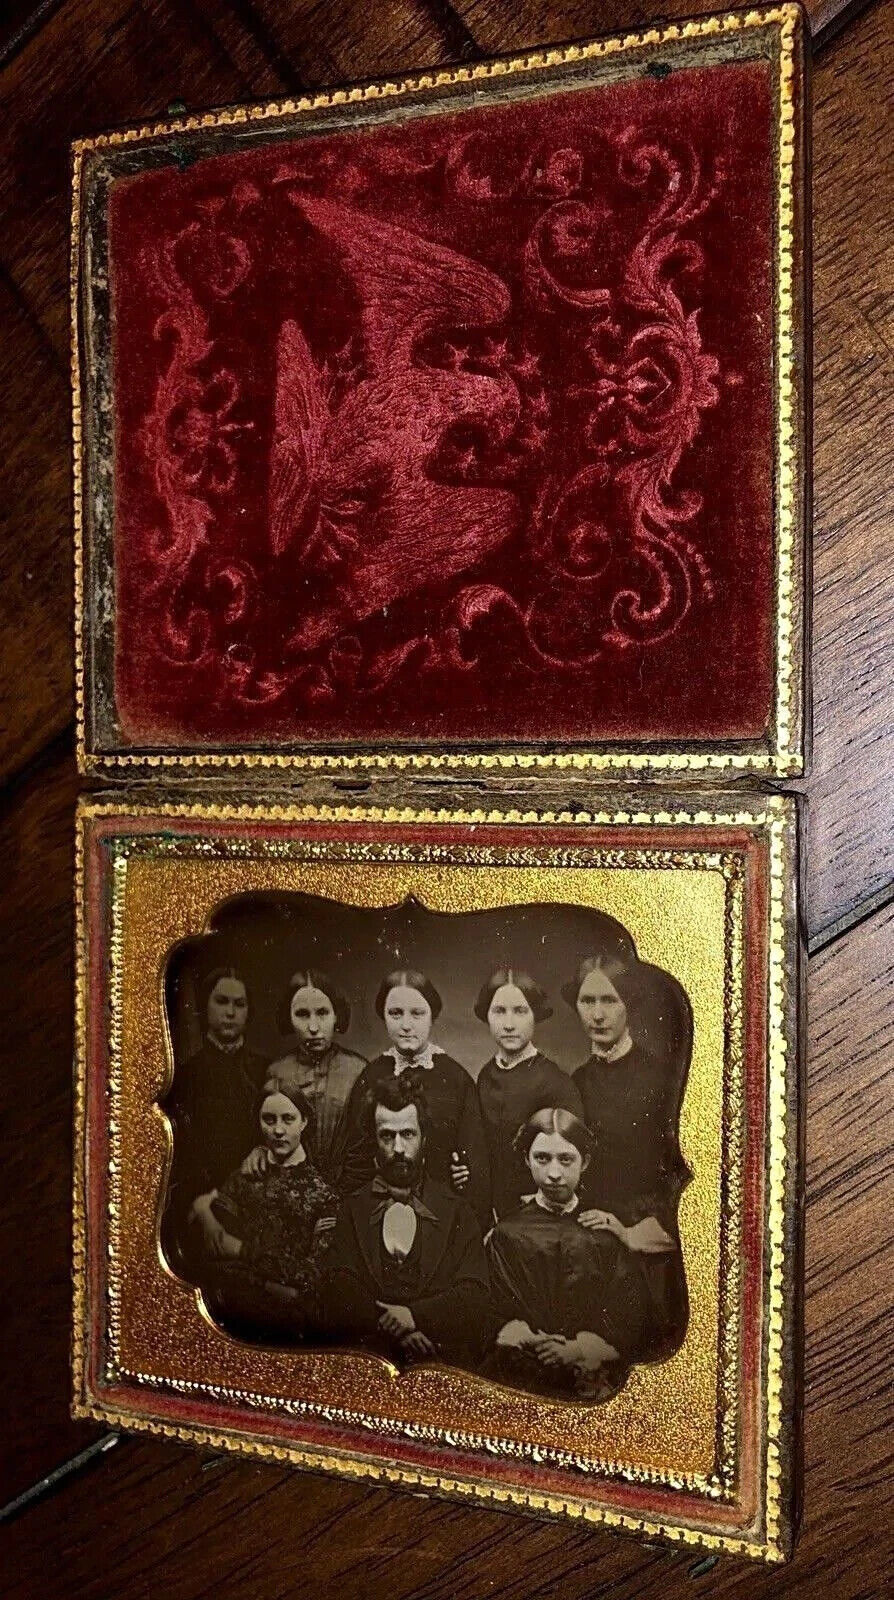 Eagle Case, Daguerreotype Photo Man & 7 Women - Mormon? Antique 1850s Rare 1800s